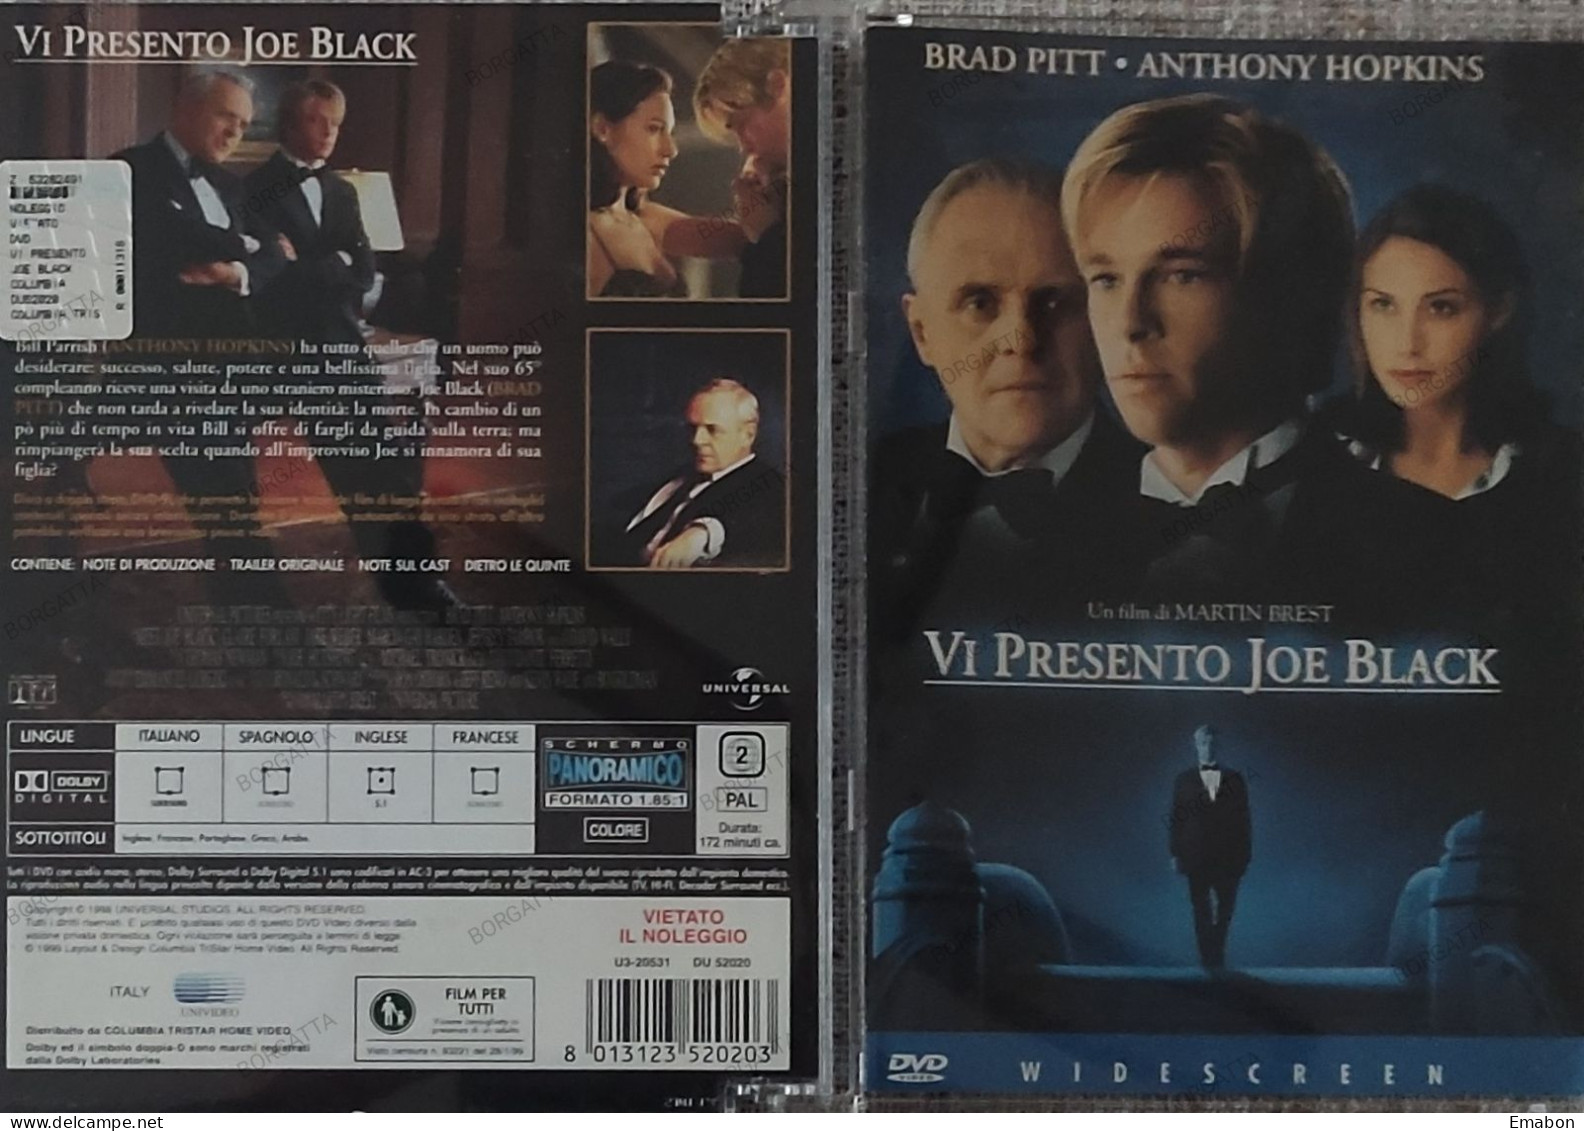 BORGATTA - FANTASTICO - Dvd " VI PRESENTO JOE BLACK "- PITT, HOPKINS - COLUMBIA 1999 -  USATO In Buono Stato - Fantasy